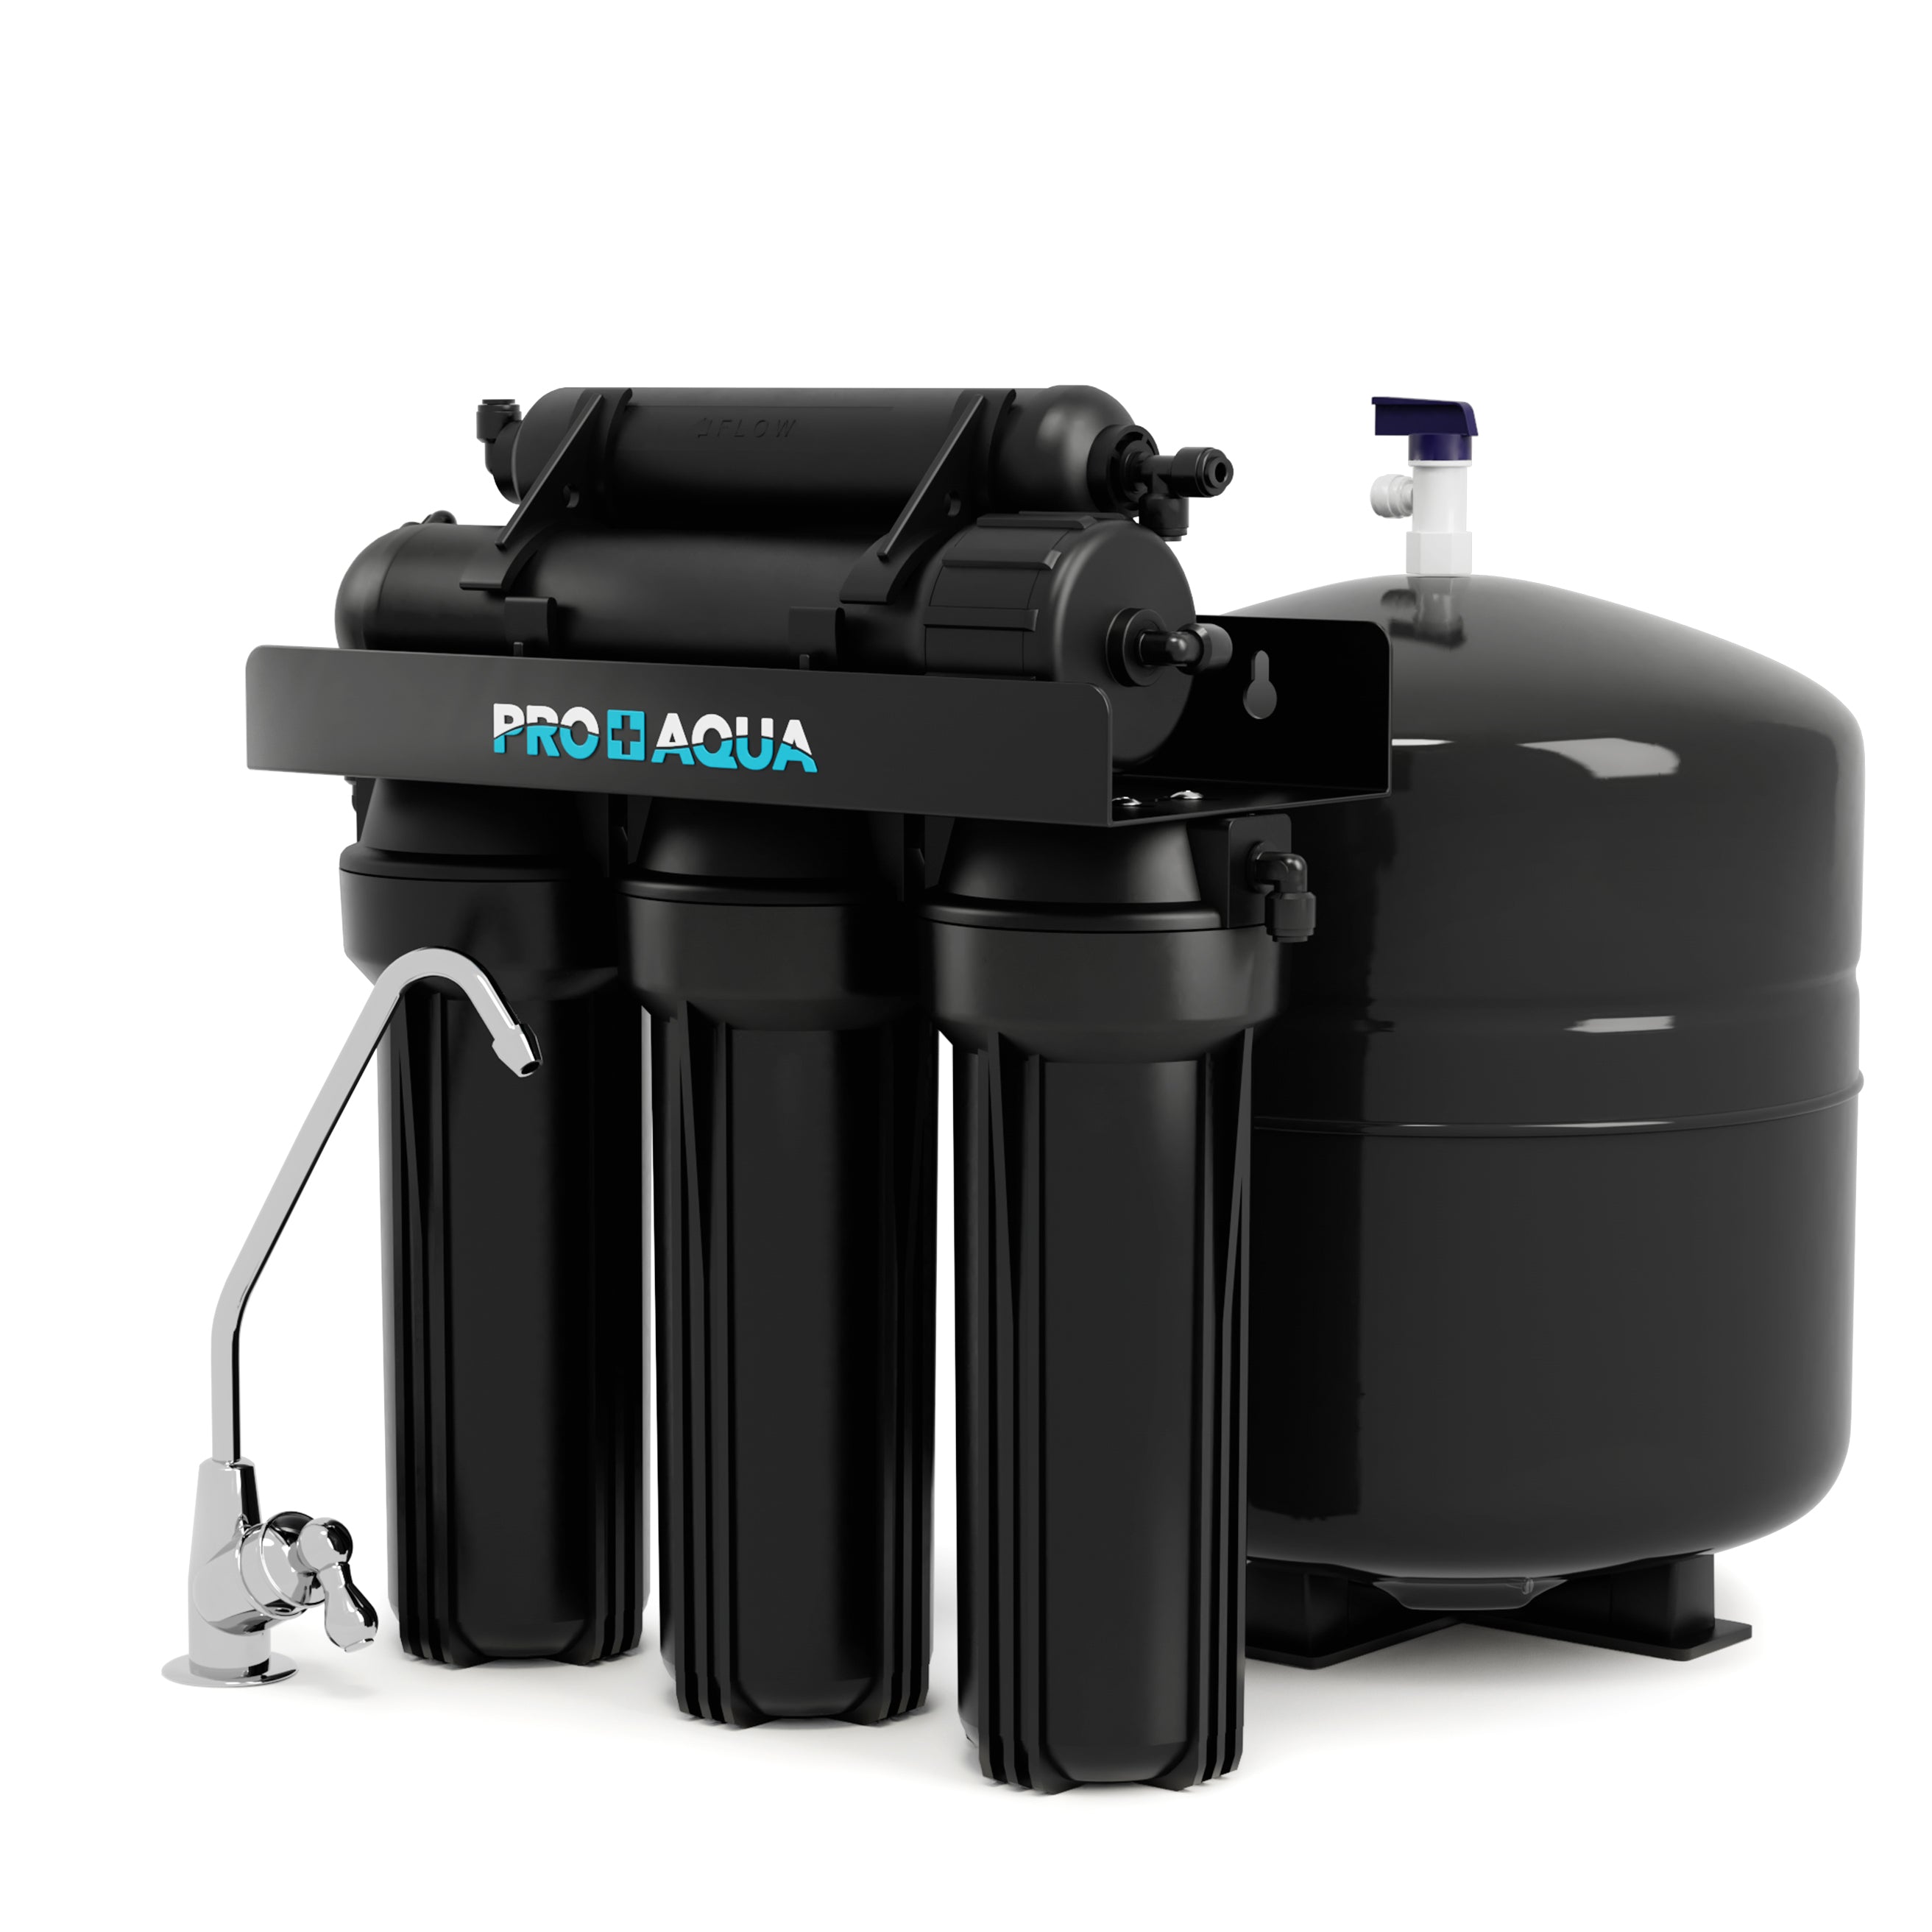 Aquapro 400 osmose 1500ltr., AquaHolland osmosis devices & parts